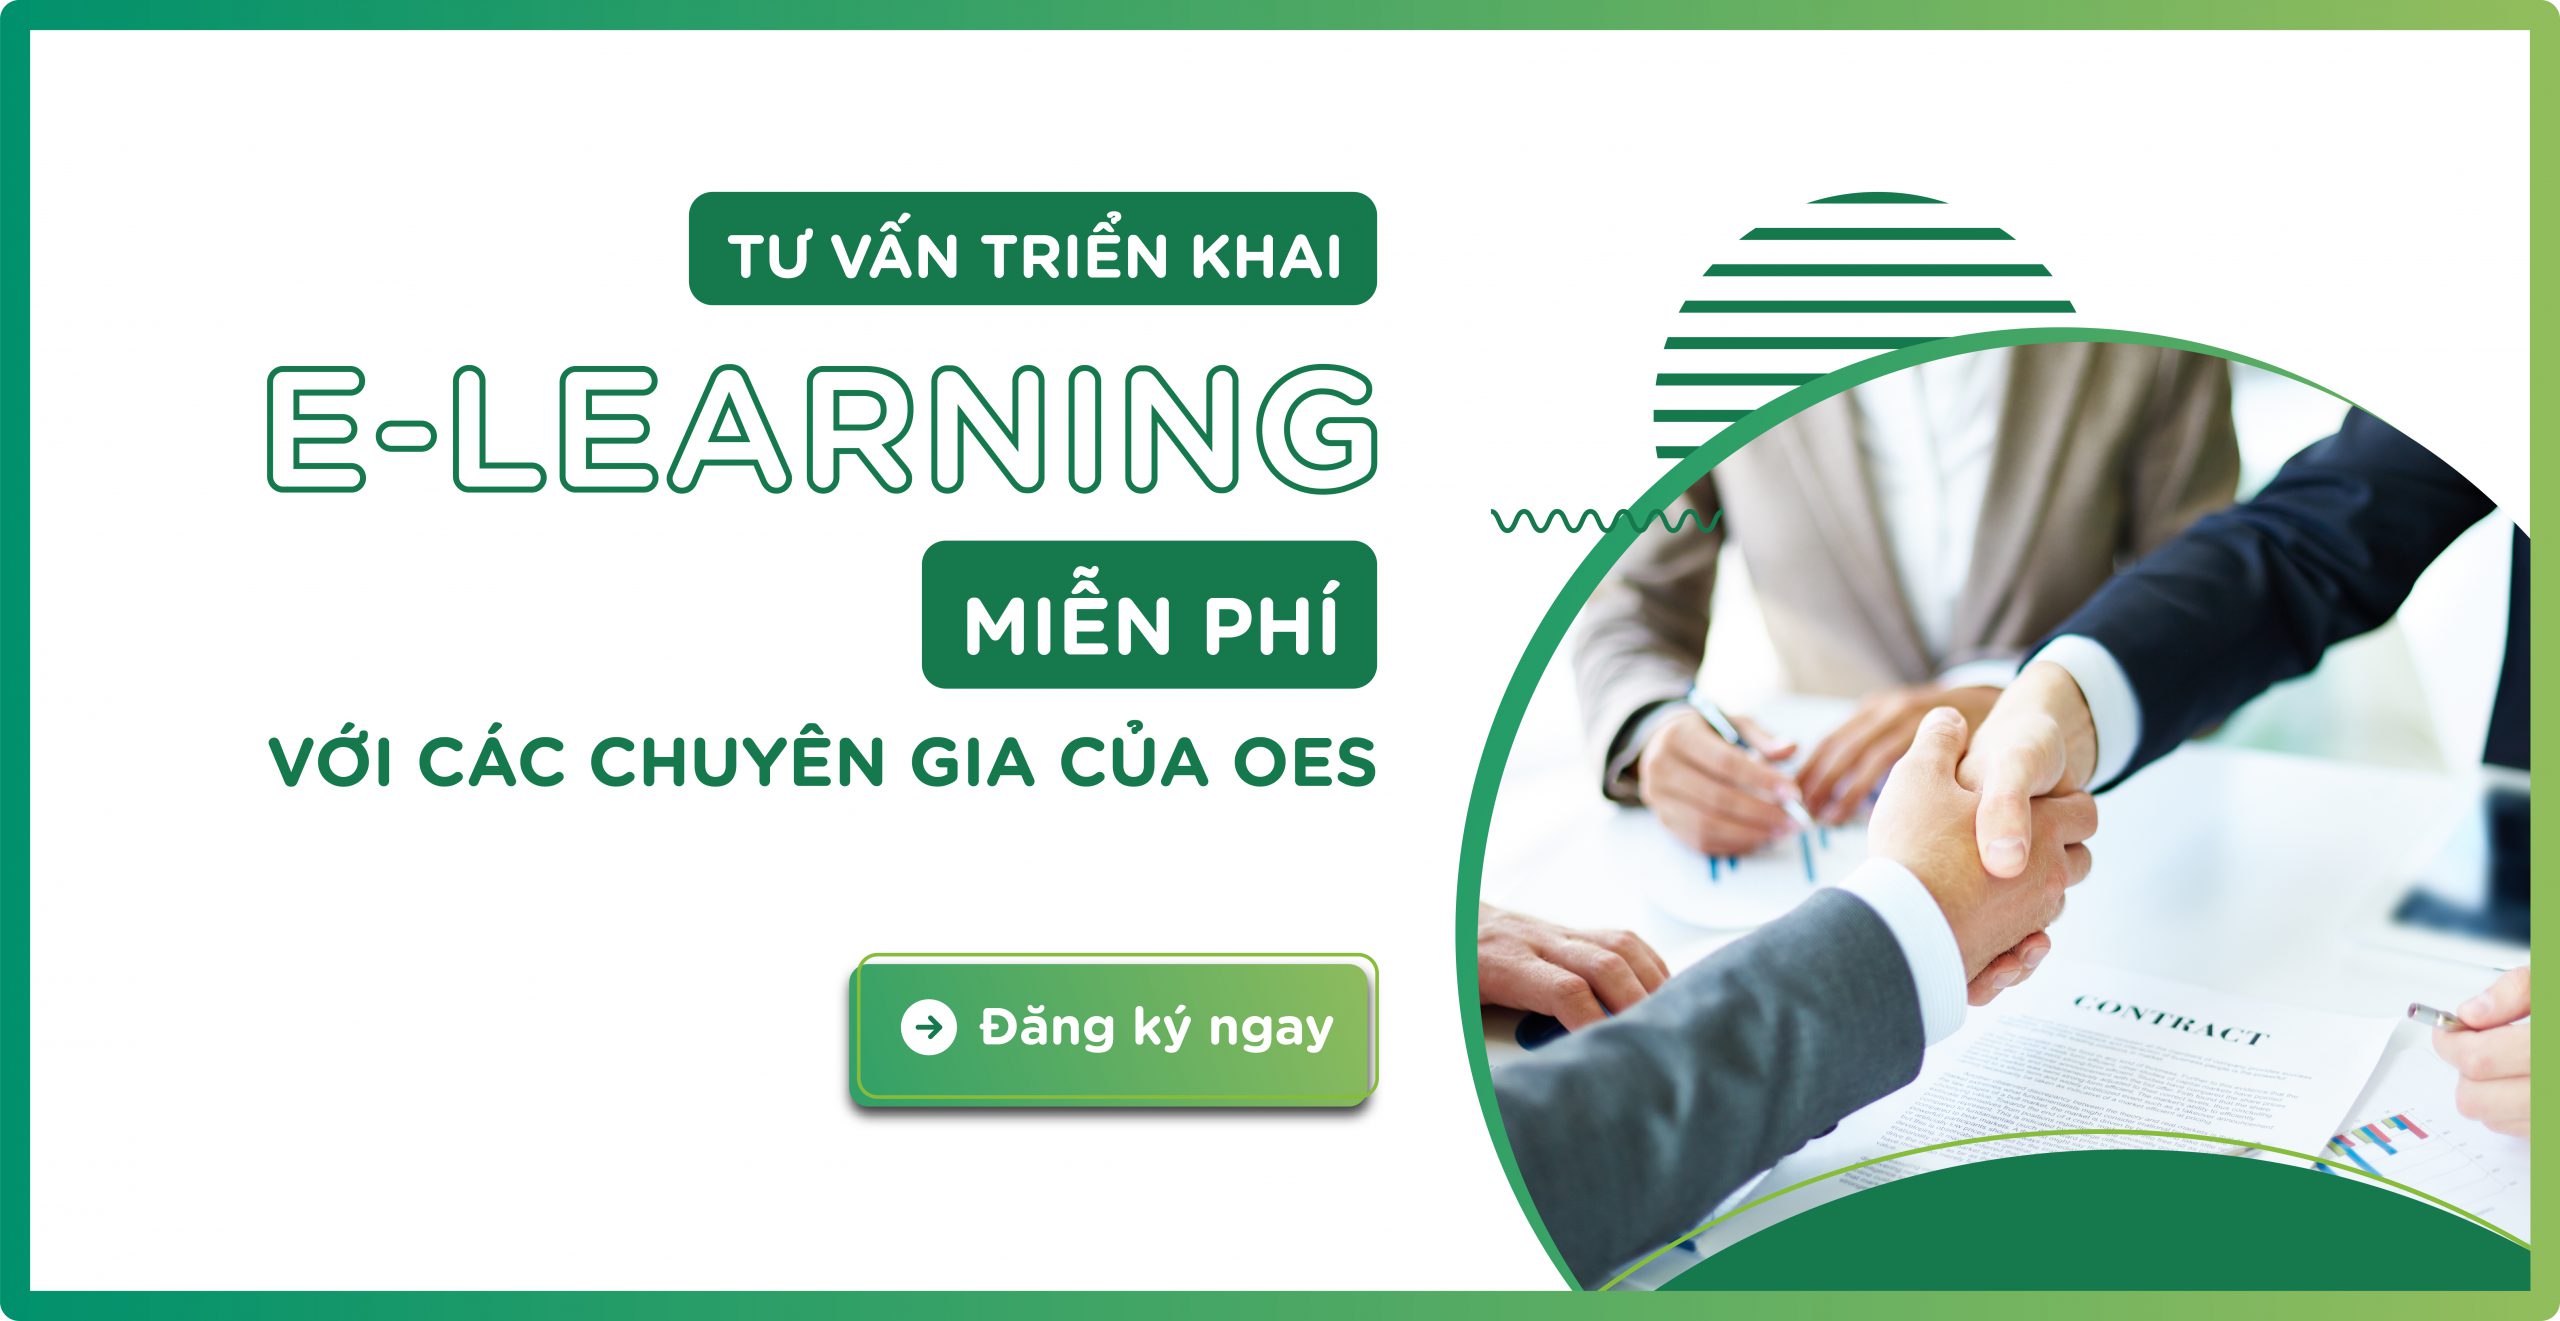 giai-phap-e-learning-cac-xu-huong-moi-nhat-trong-viec-hoc-ap-dung-cong-nghe-thuc-te-ao